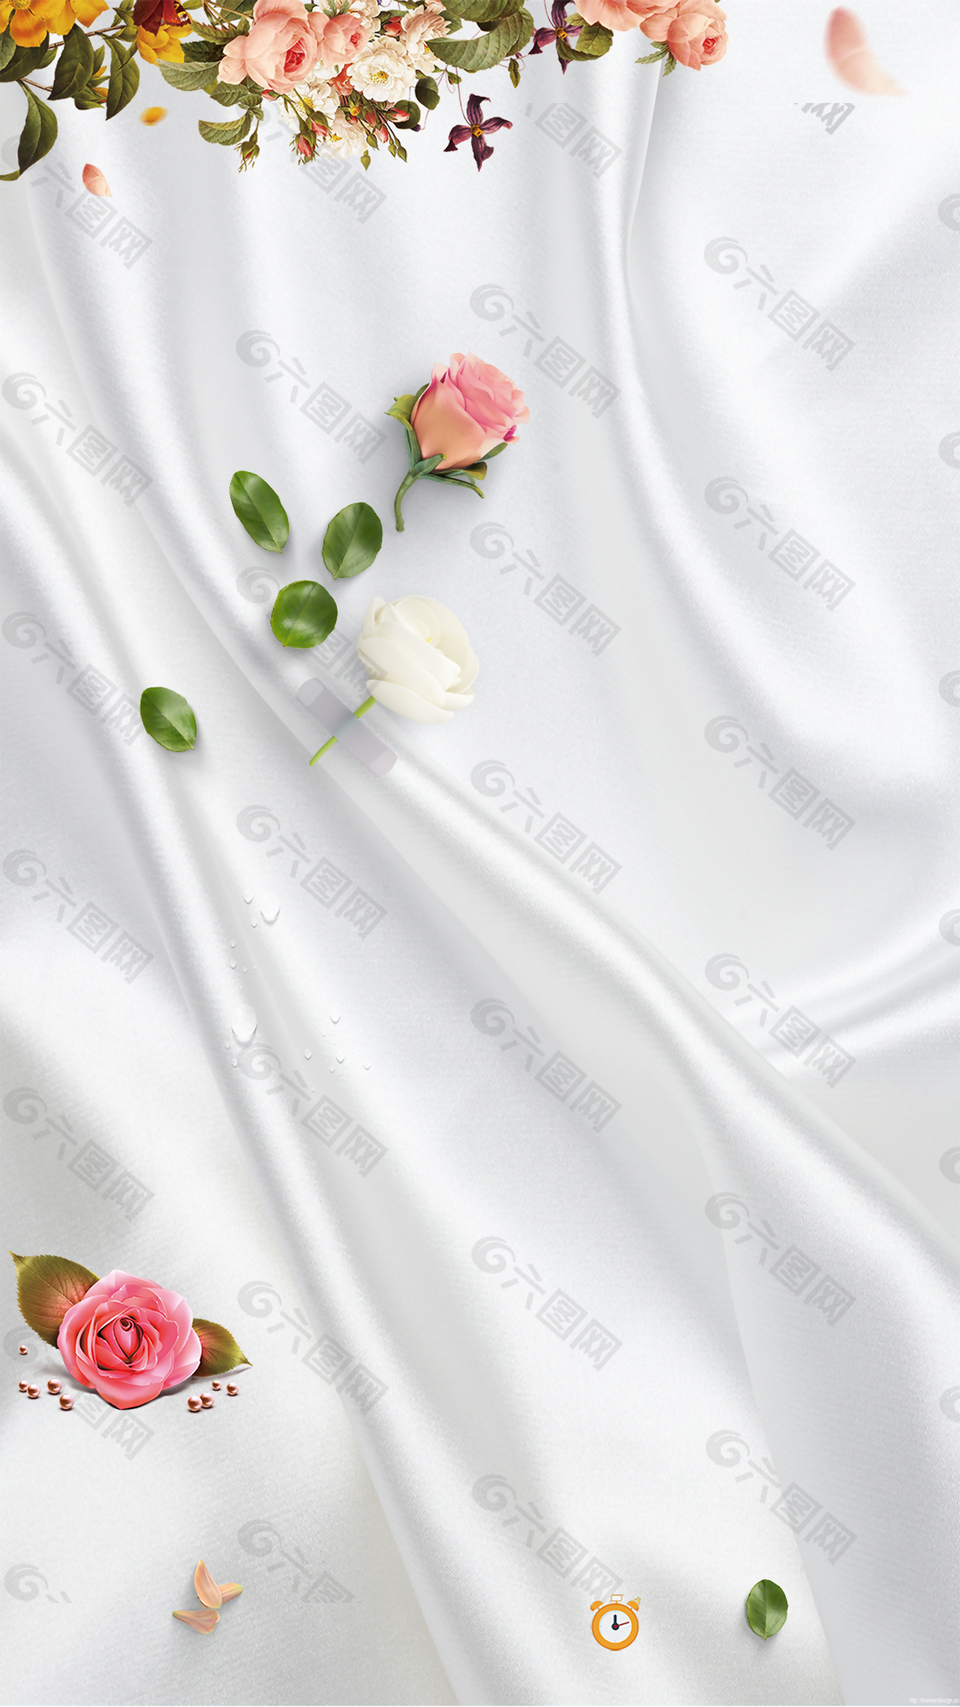 玫瑰精华液宣传化妆玫瑰花背景